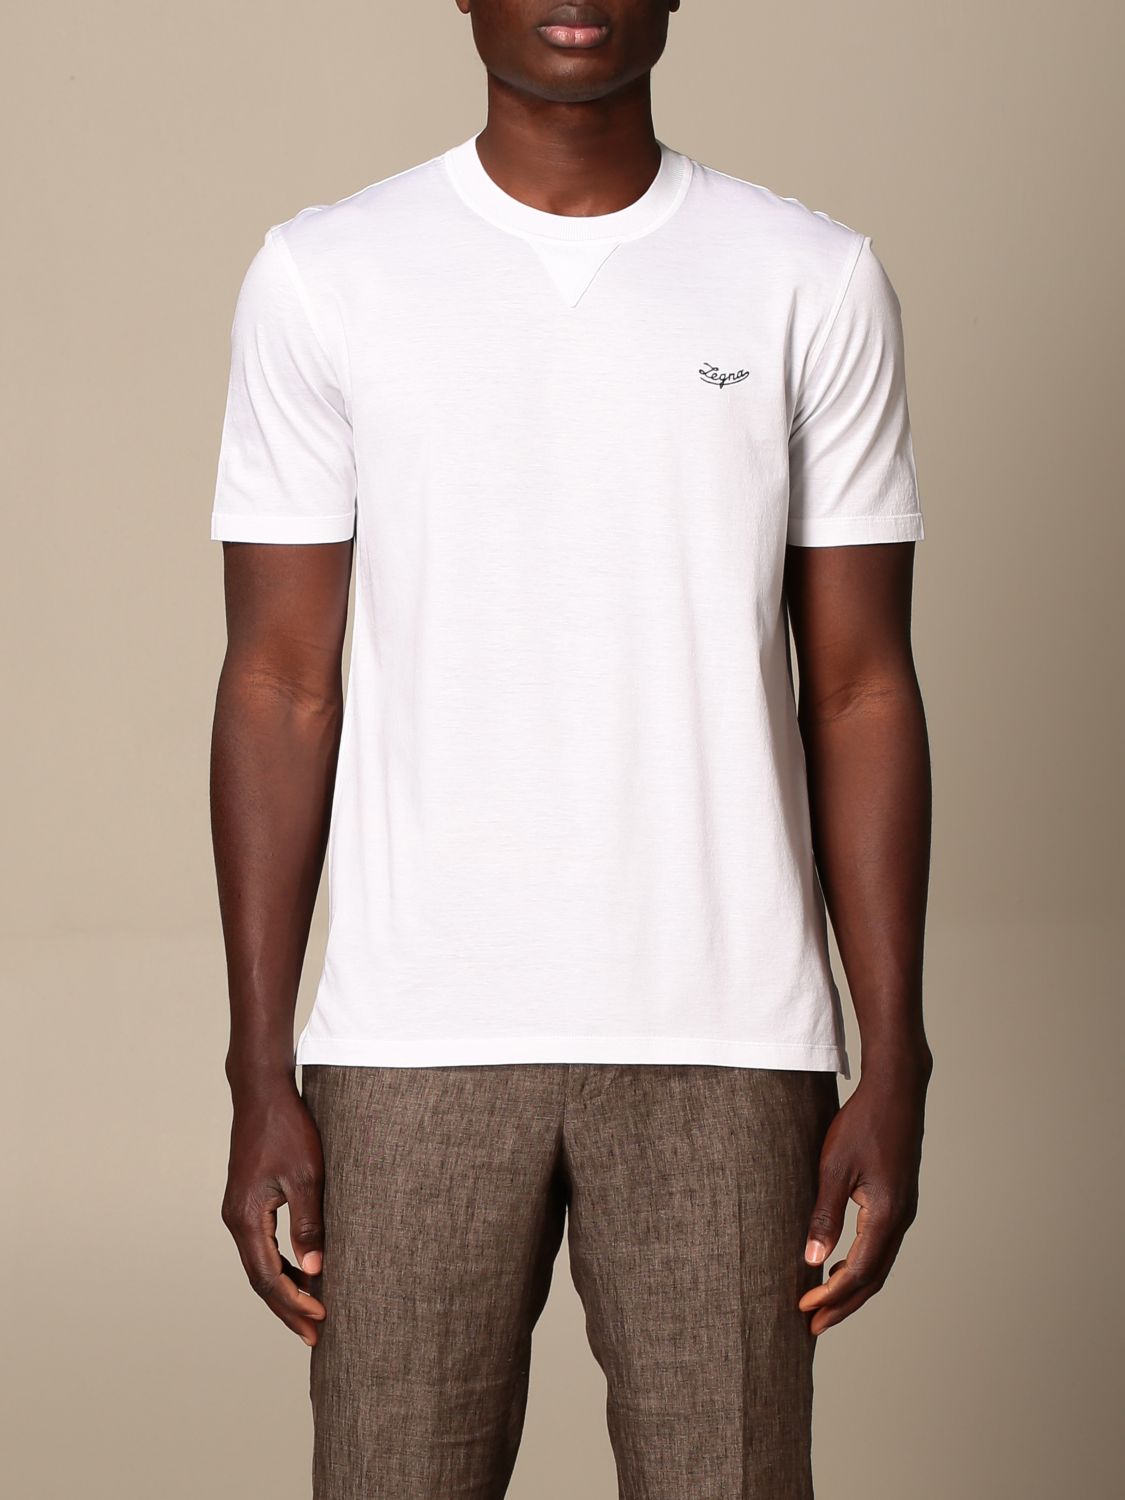 Zegna Outlet: Ermenegildo T-shirt in pure cotton - White | Zegna t